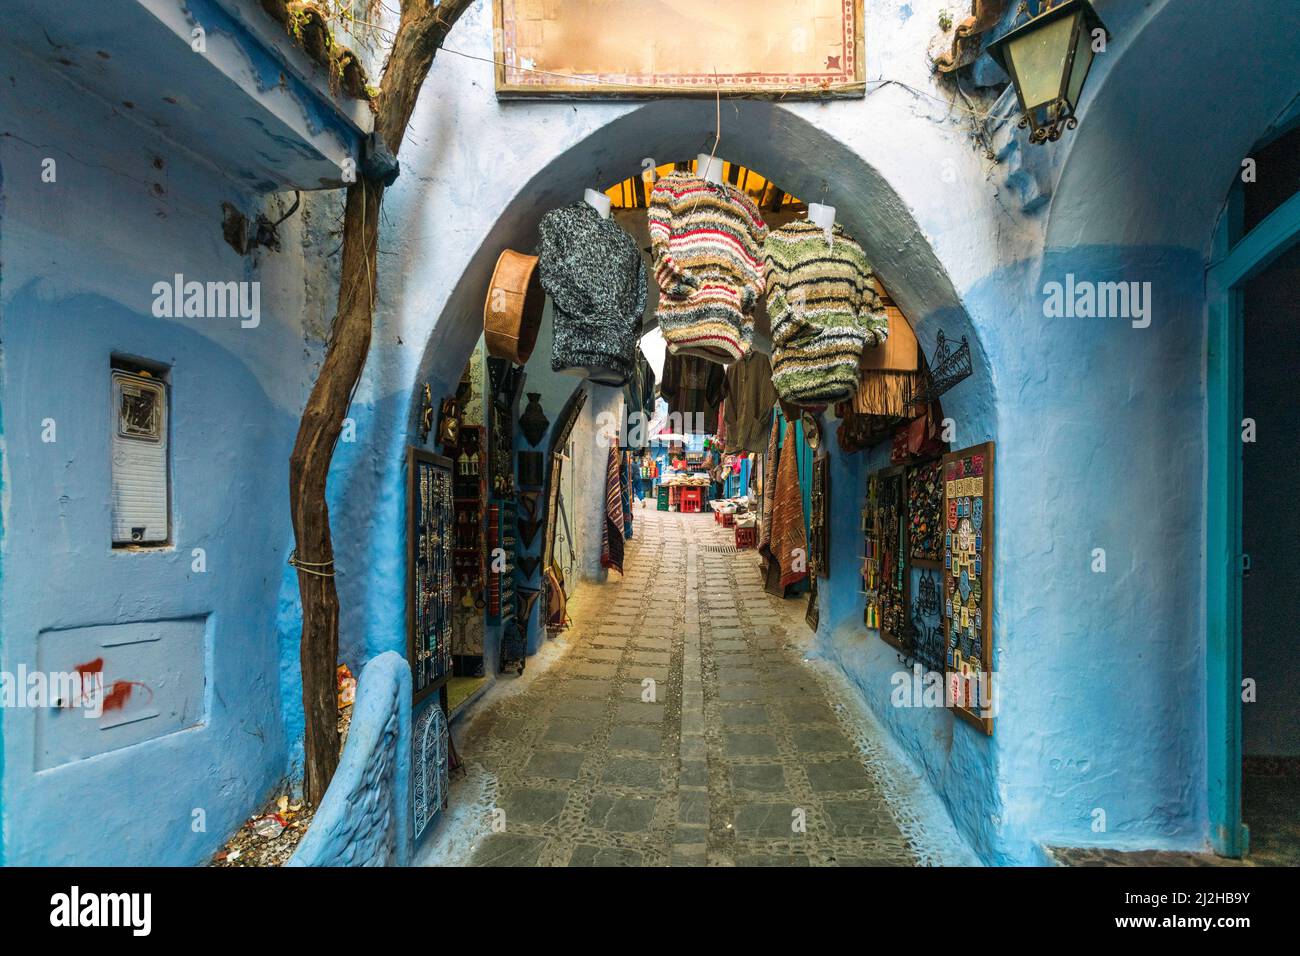 Marruecos, Chefchaouen, callejón de adoquines y souvenirs a la venta Foto de stock